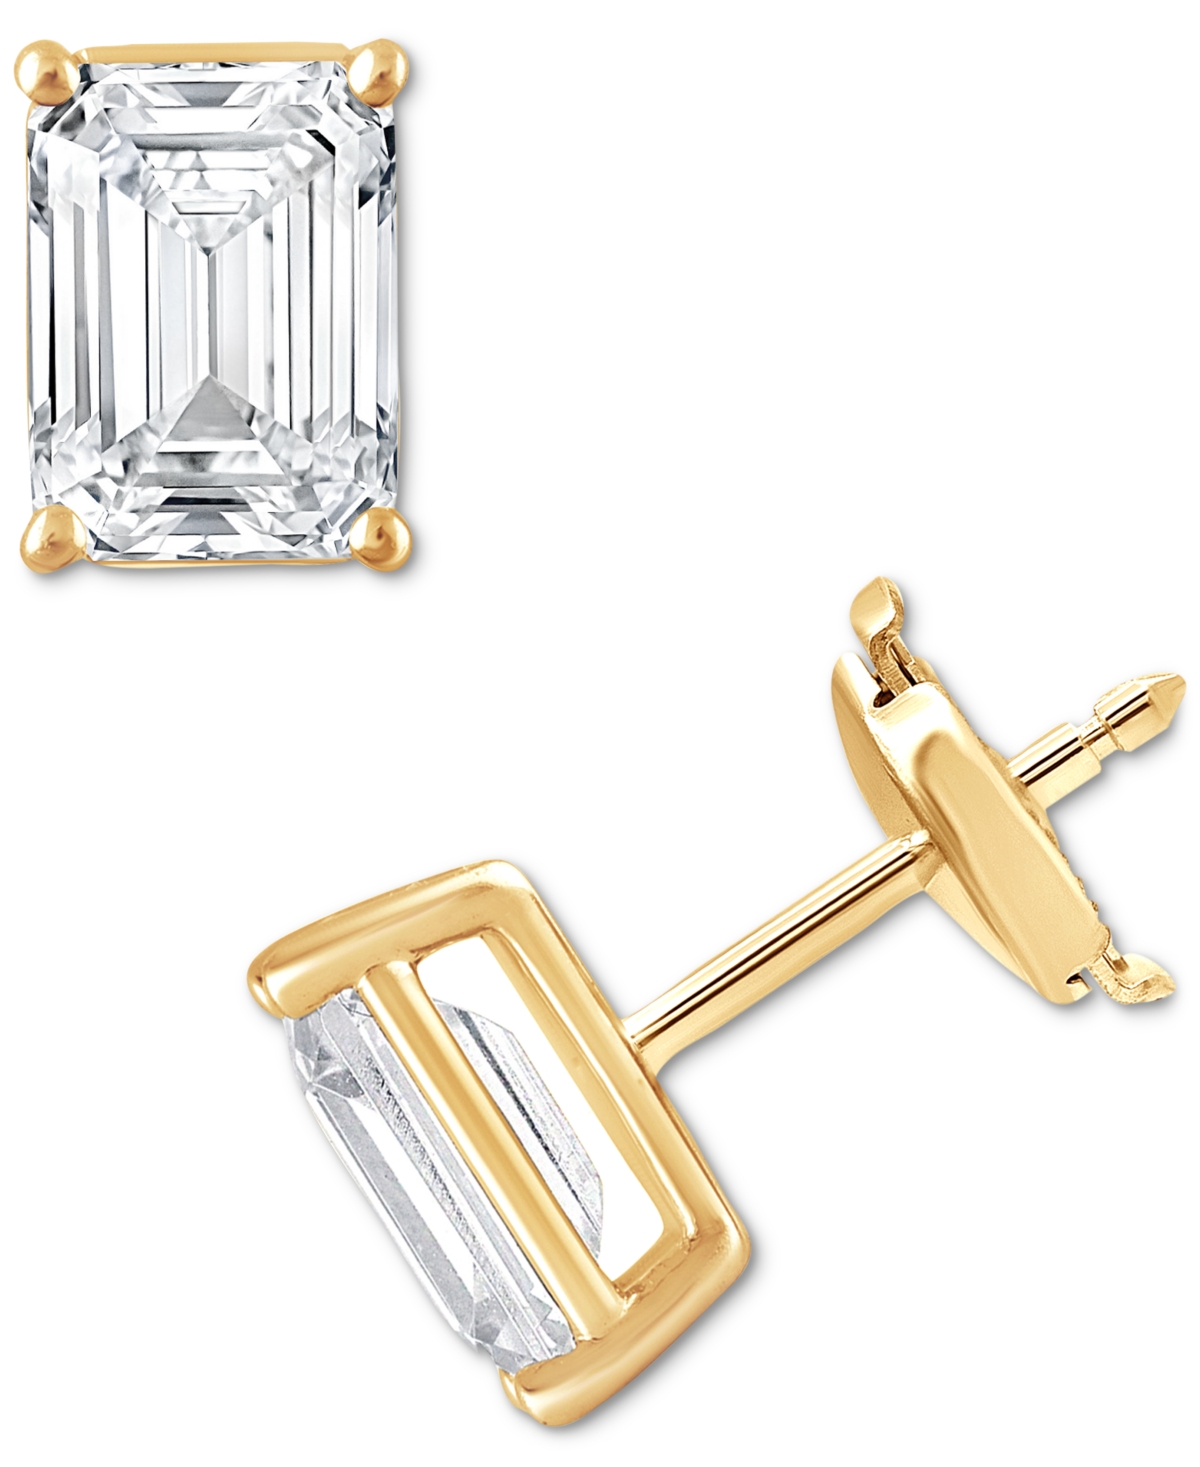 Certified Lab Grown Diamond Emerald-Cut Stud Earrings (4 ct. t.w.) in 14k Gold - Yellow Gold